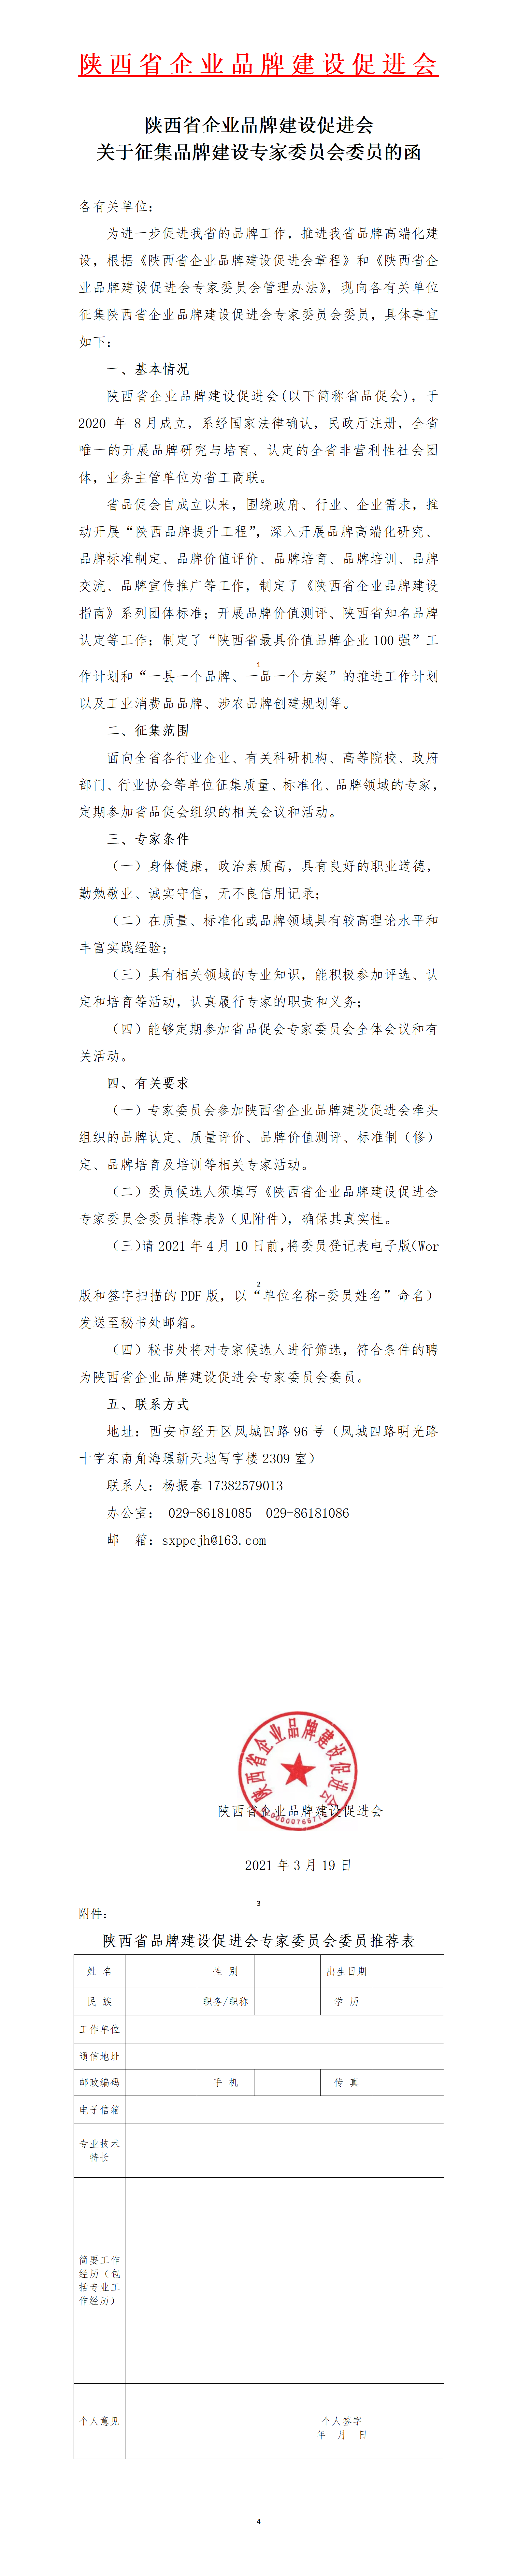 陕西省企业品牌建设促进会关于征集品牌建设专家委员会委员的函(图1)